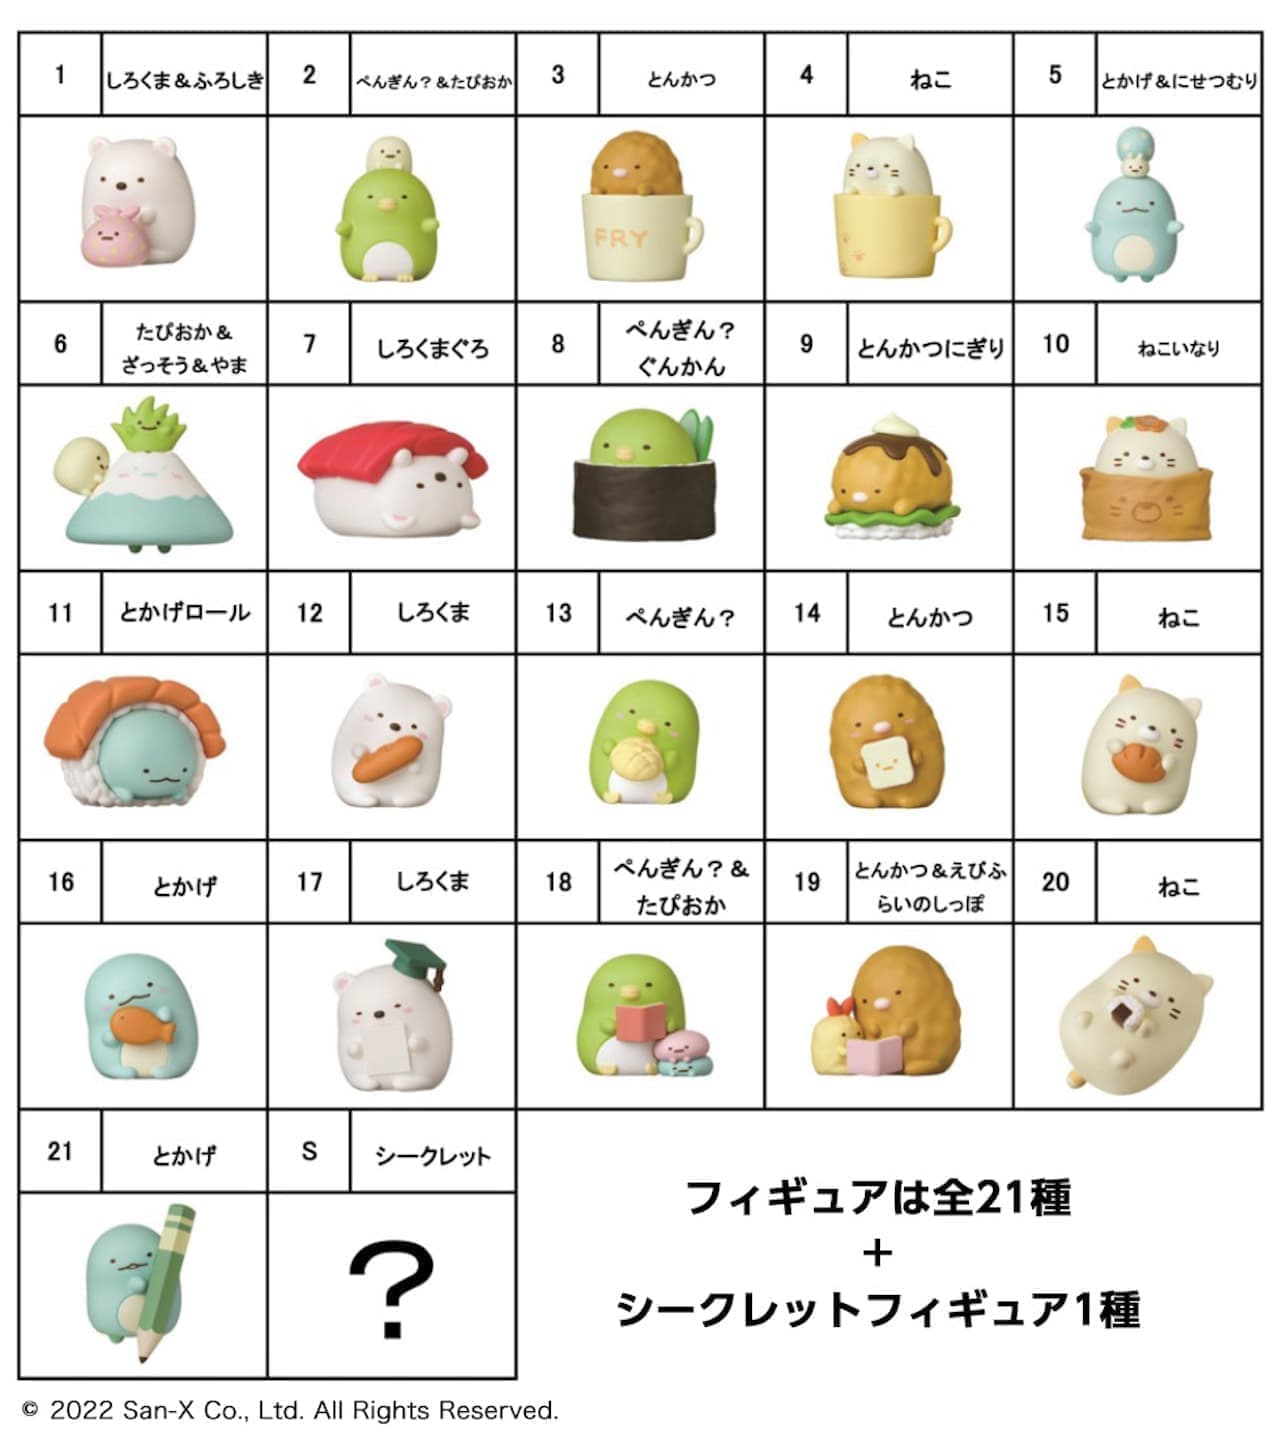 Choco Egg (Sumikko Gurashi 2)" from Furuta Confectionery